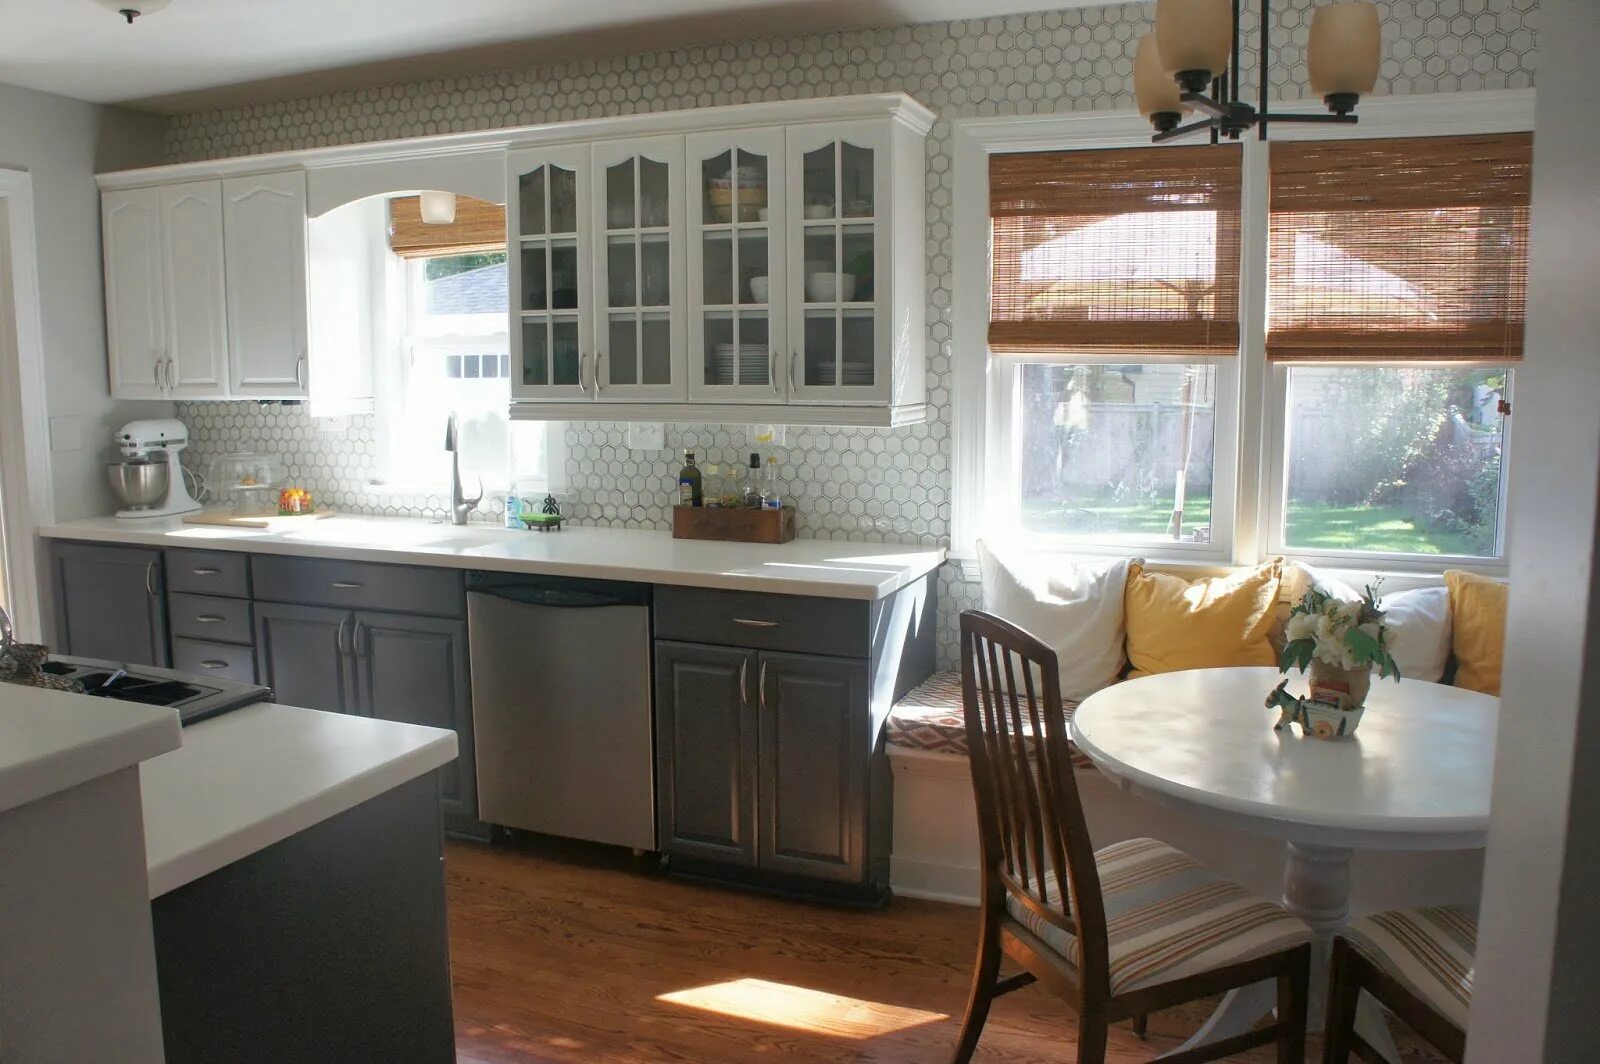 Планировка кухни с окном. Кухня с окном в частном доме. Кухонный гарнитур с окном. Кухня с двумя окнами.